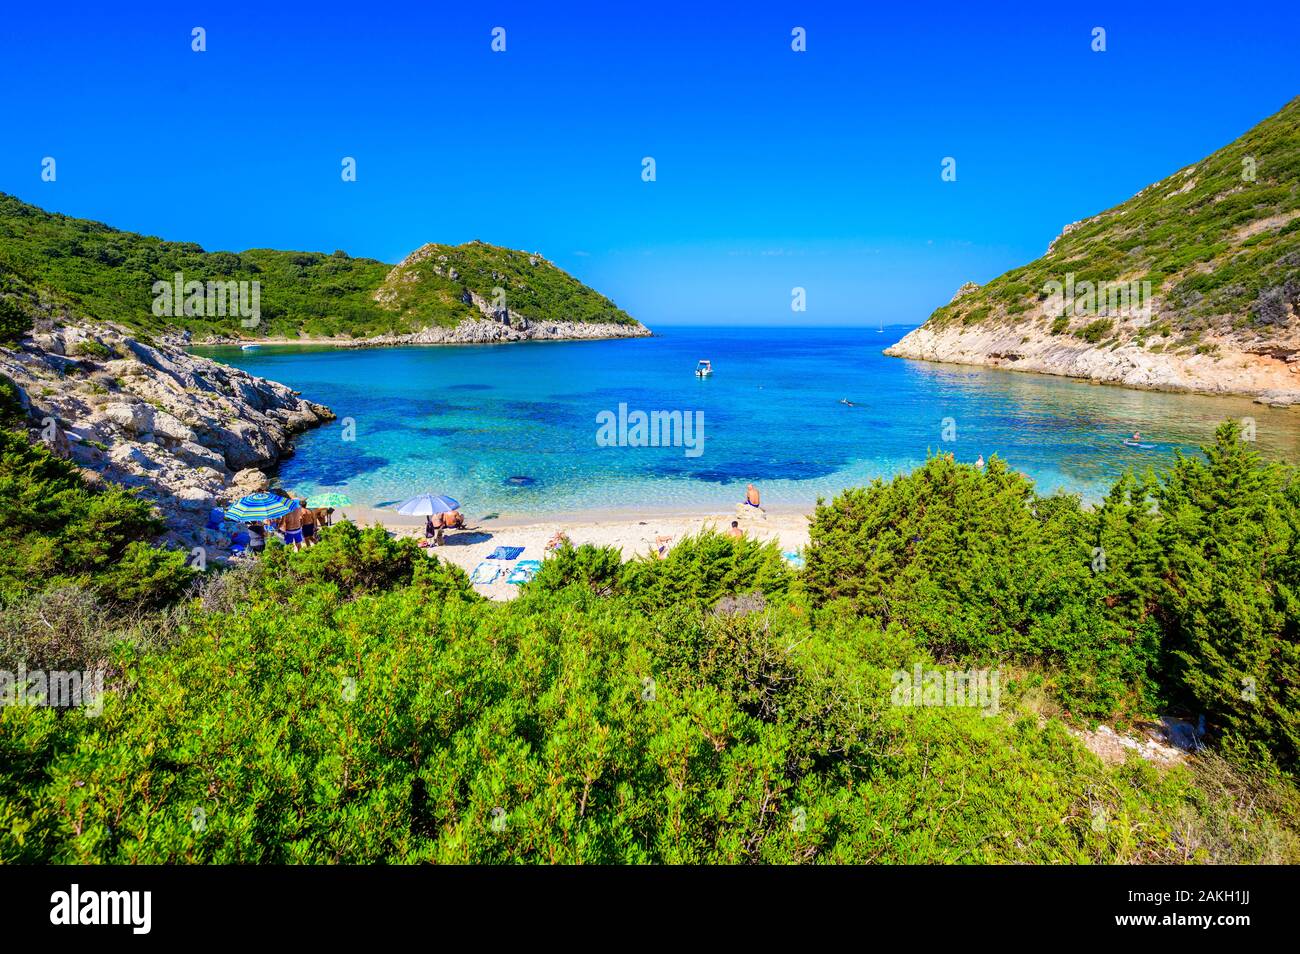 Plage de Porto à Afionas Timoni est un paradis avec plage double clair comme de l'eau azur à Corfou, Double Bay, île Ionienne, Grèce, Europe Banque D'Images